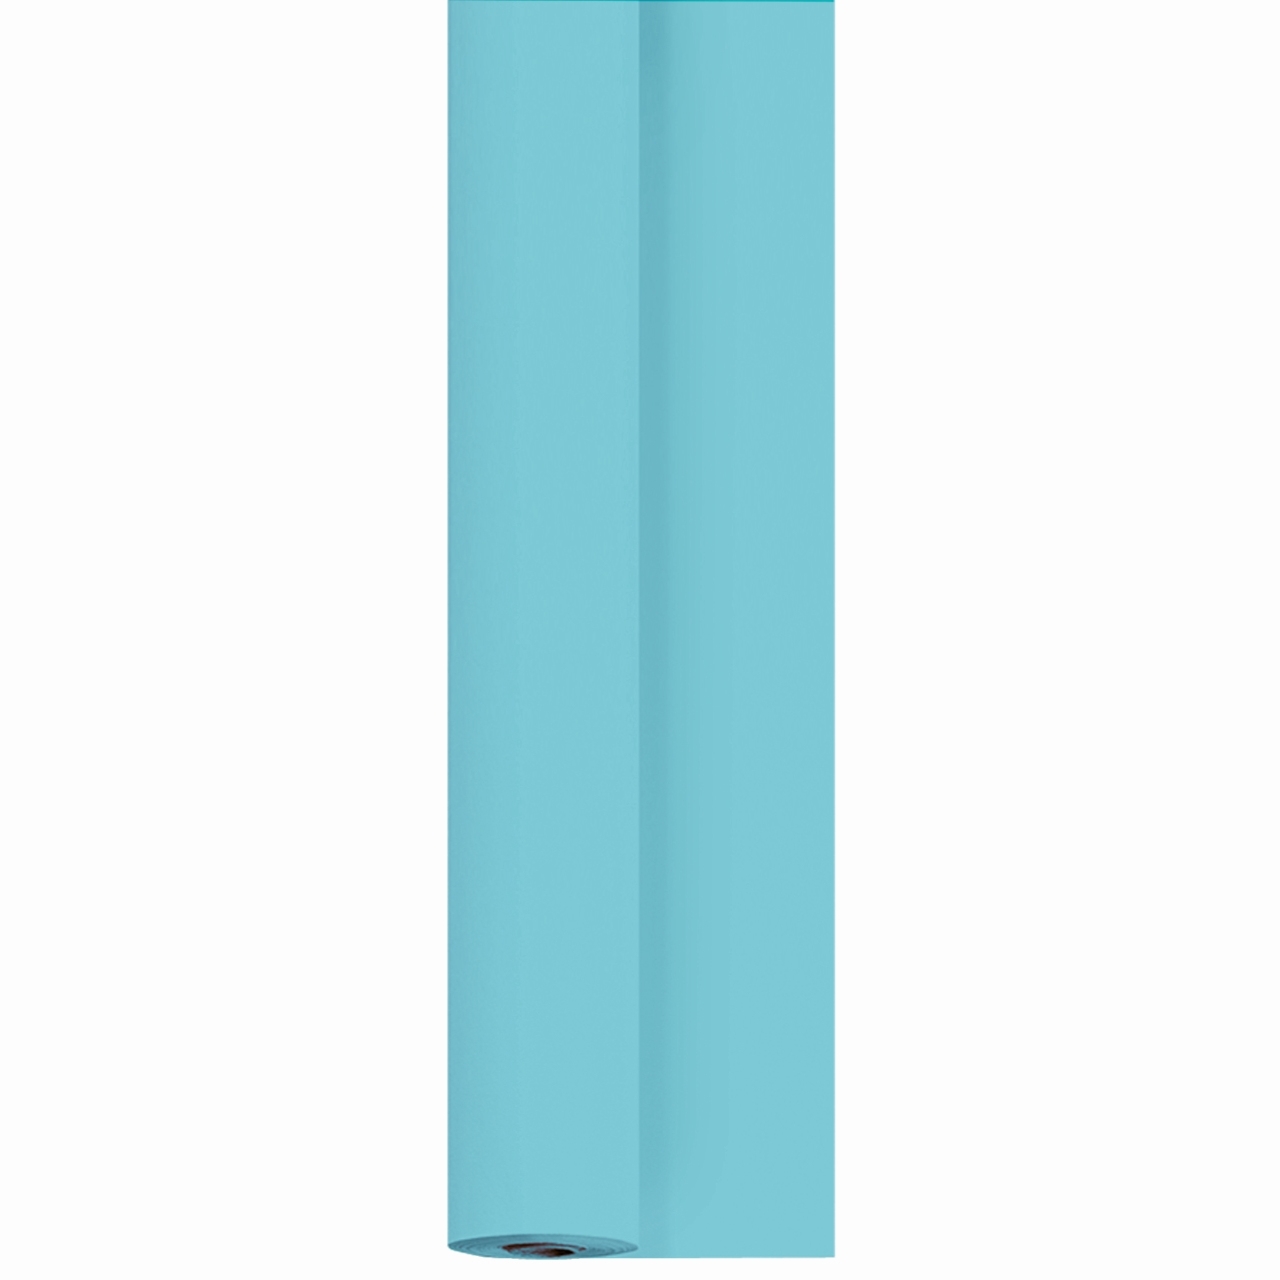 Duni-Tischvlies 1,18 x 25 m, mint blue, 185521